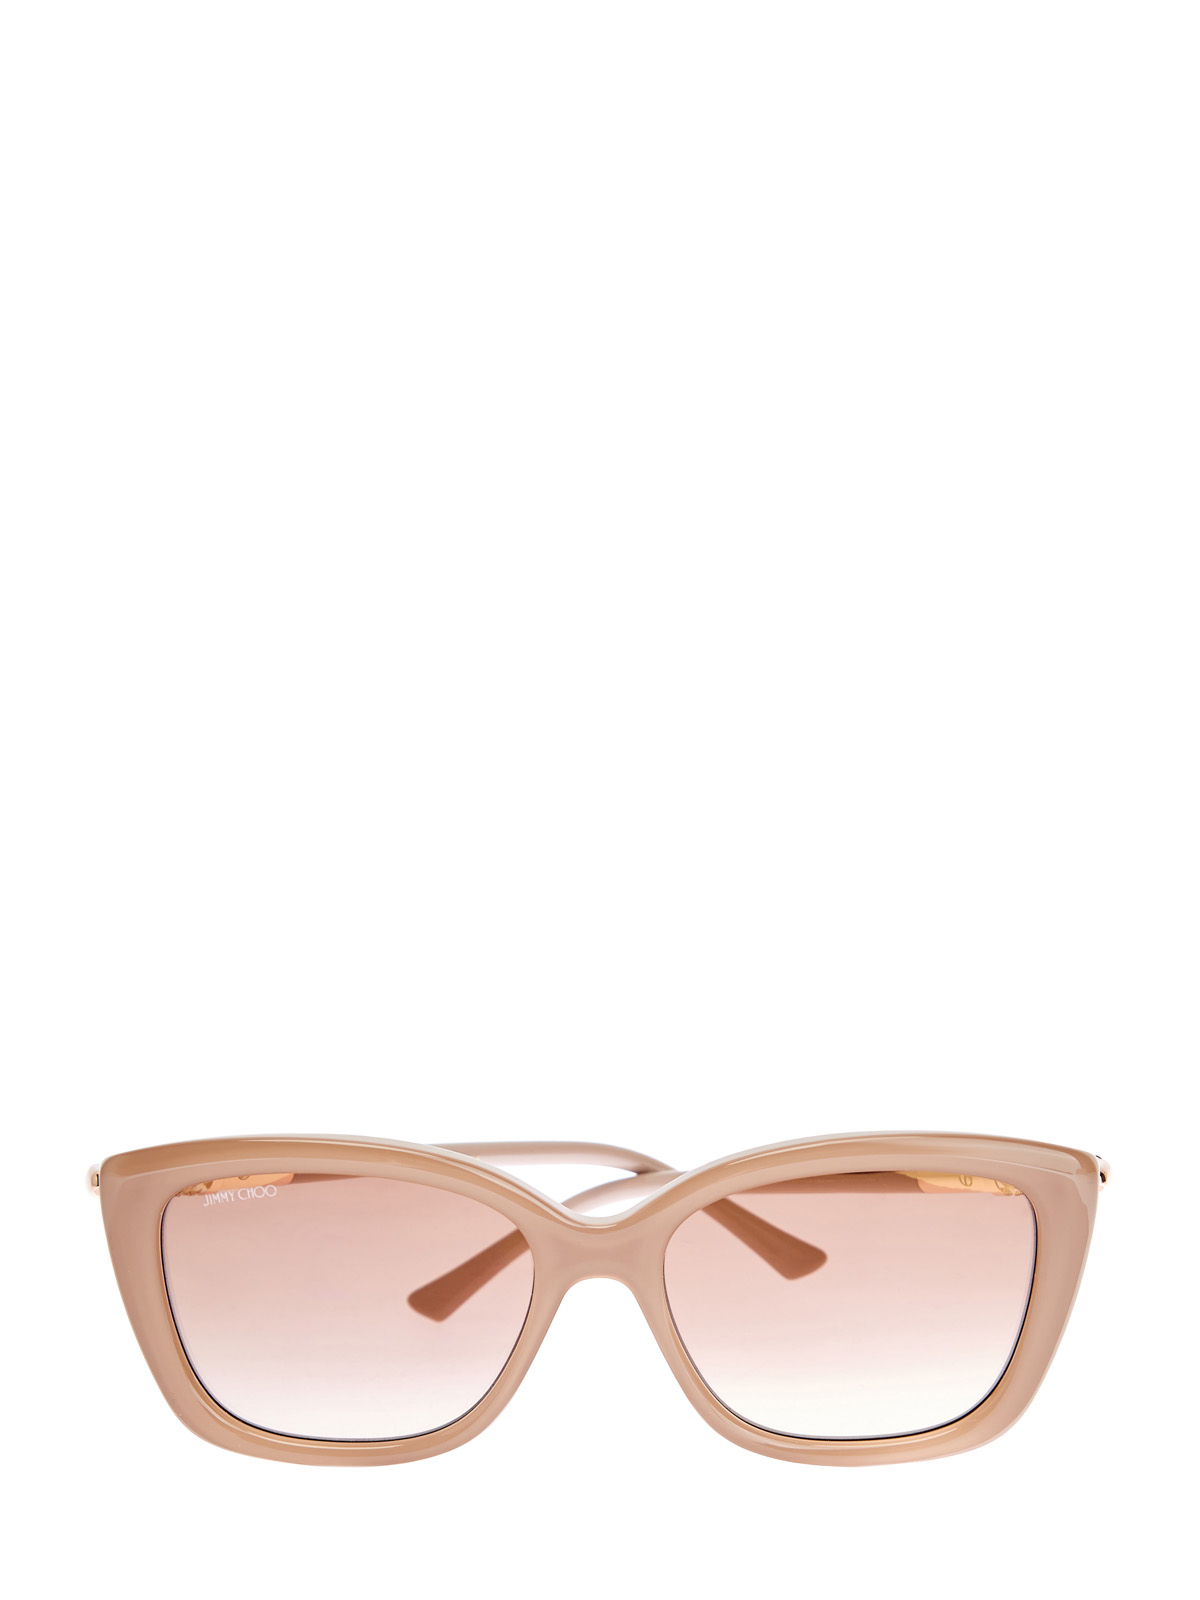 Солнцезащитные очки Adahs с мерцающей отделкой JIMMY CHOO  (sunglasses), цвет бежевый, размер S;M;L - фото 1